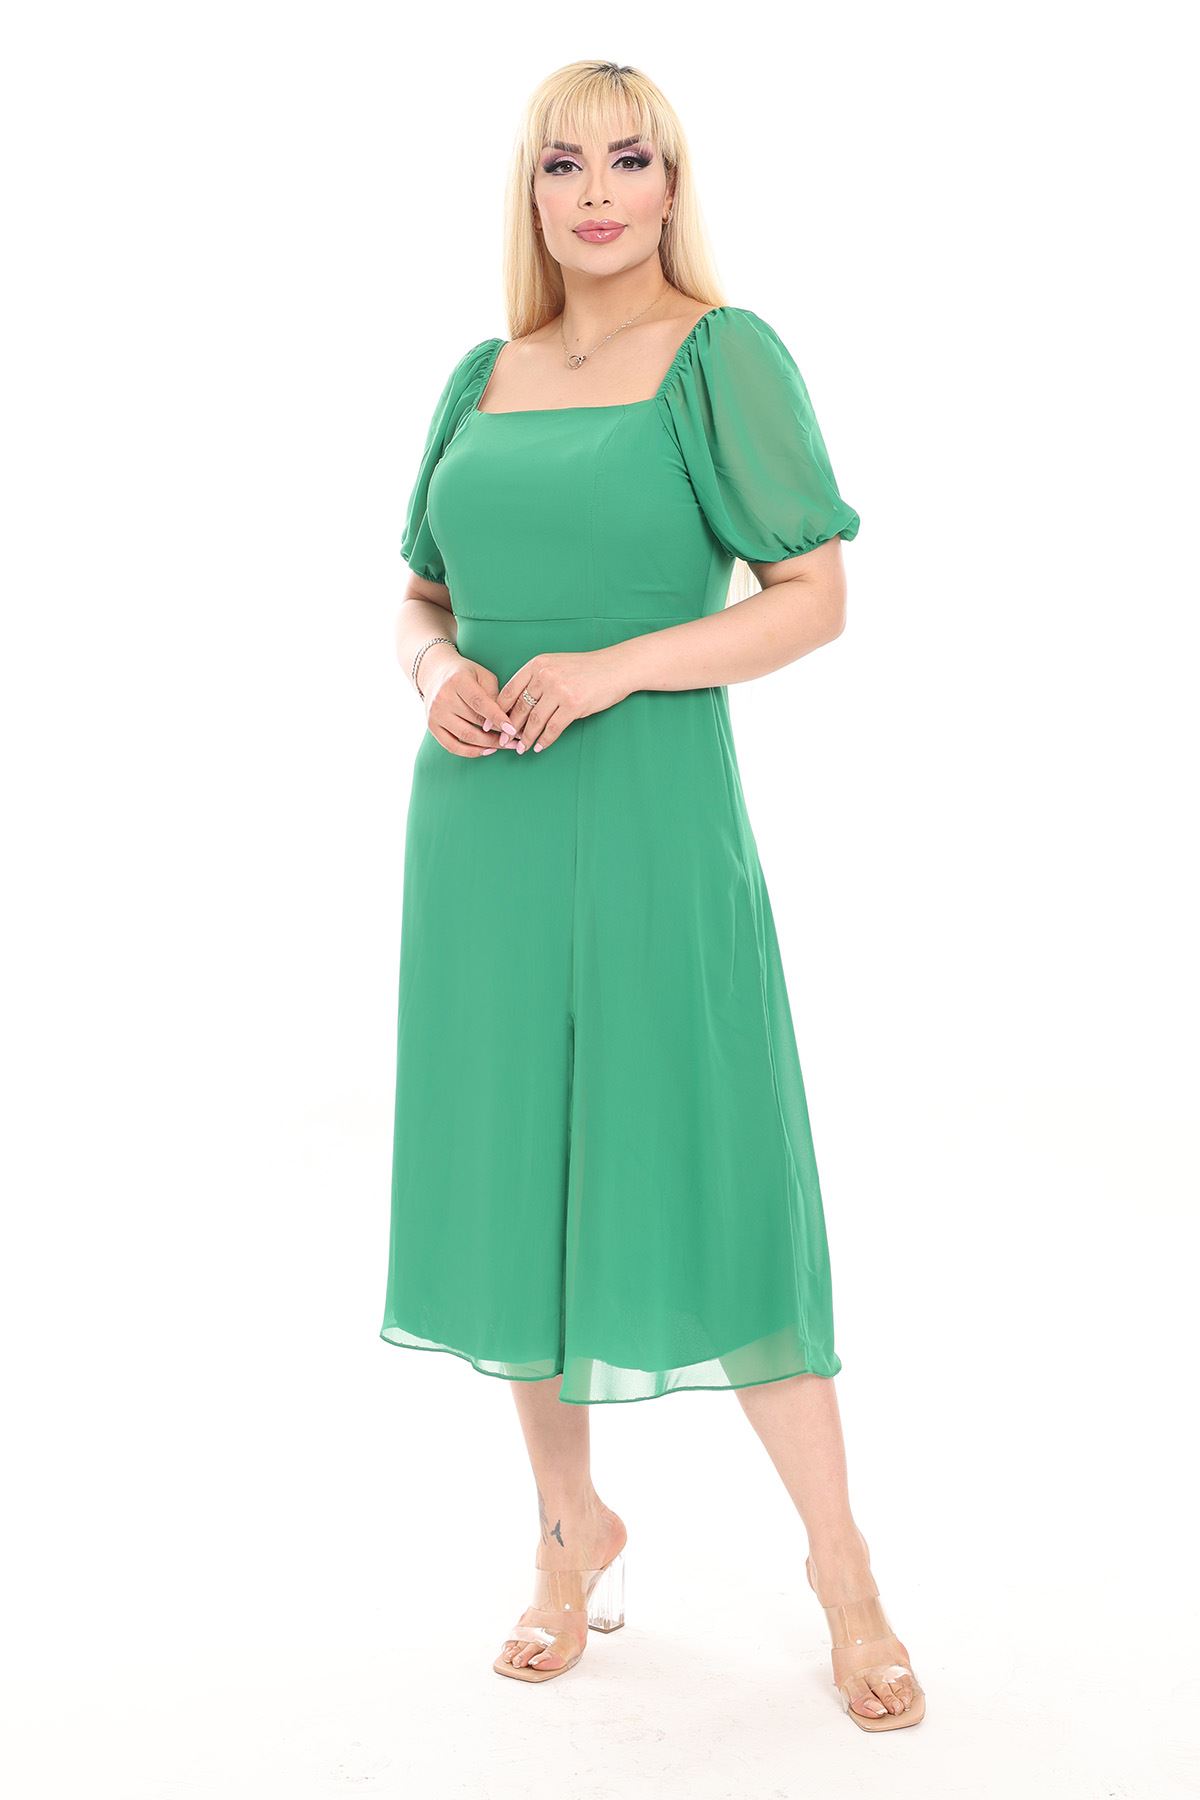 Kadın Büyük Beden Yeşil Şifon Yırtmaçlı Yazlık Elbise 8D-2152